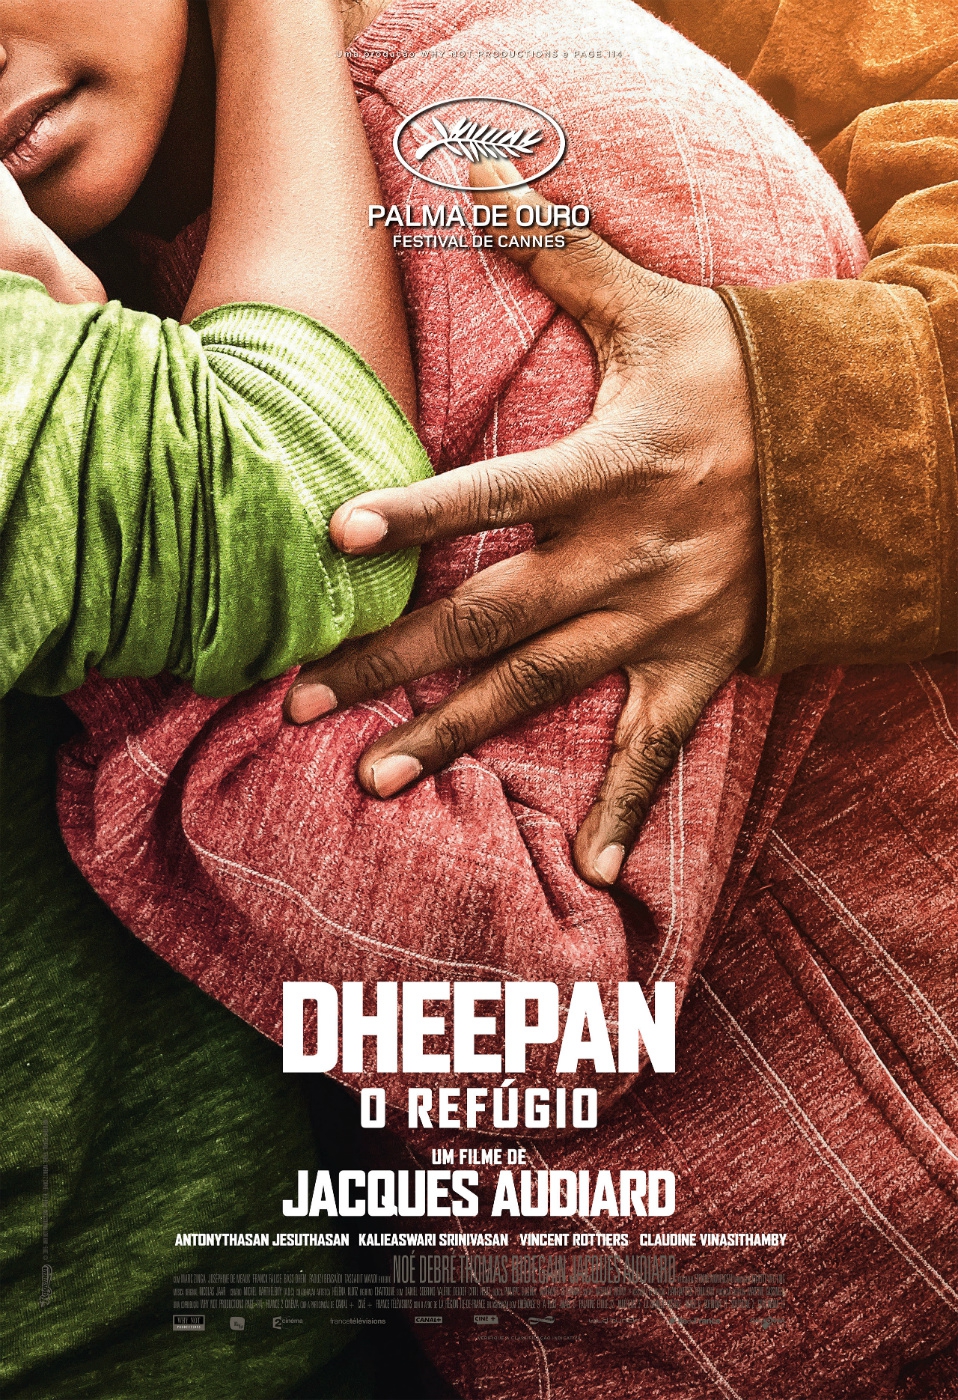  Dheepan - O Refúgio (2015) Poster 